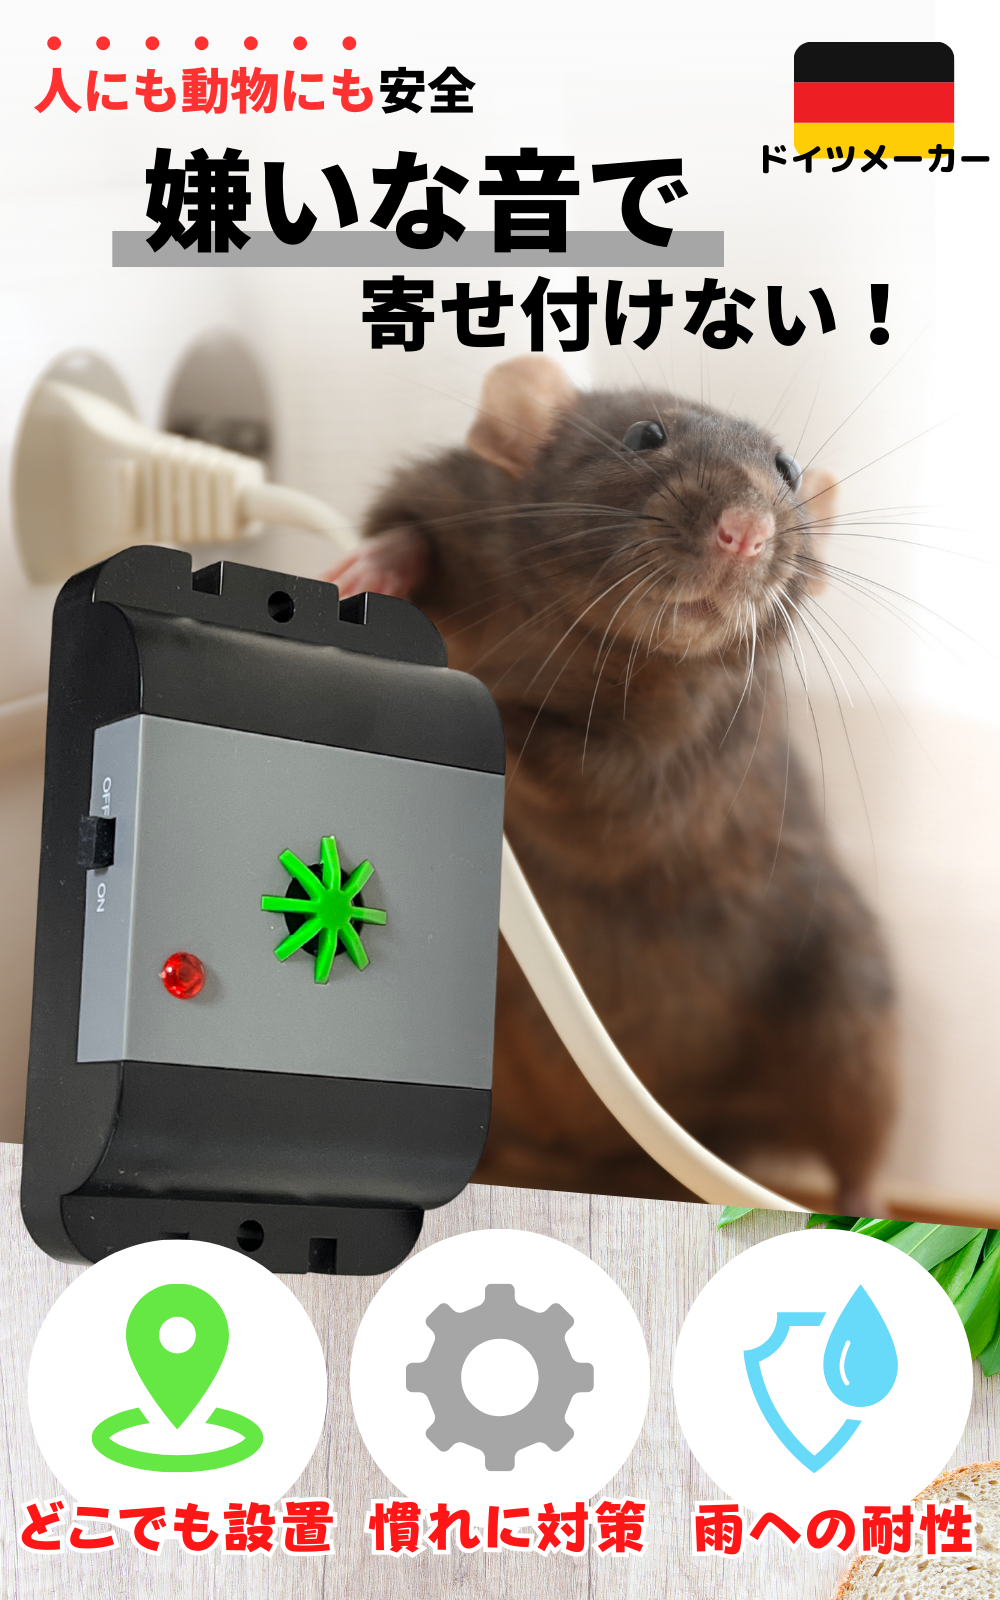 ISOTRONIC　吊るせる　超音波撃退器　–　有効範囲40㎡　ネズミ駆除　電池式でどこでも設置　防水　Japan